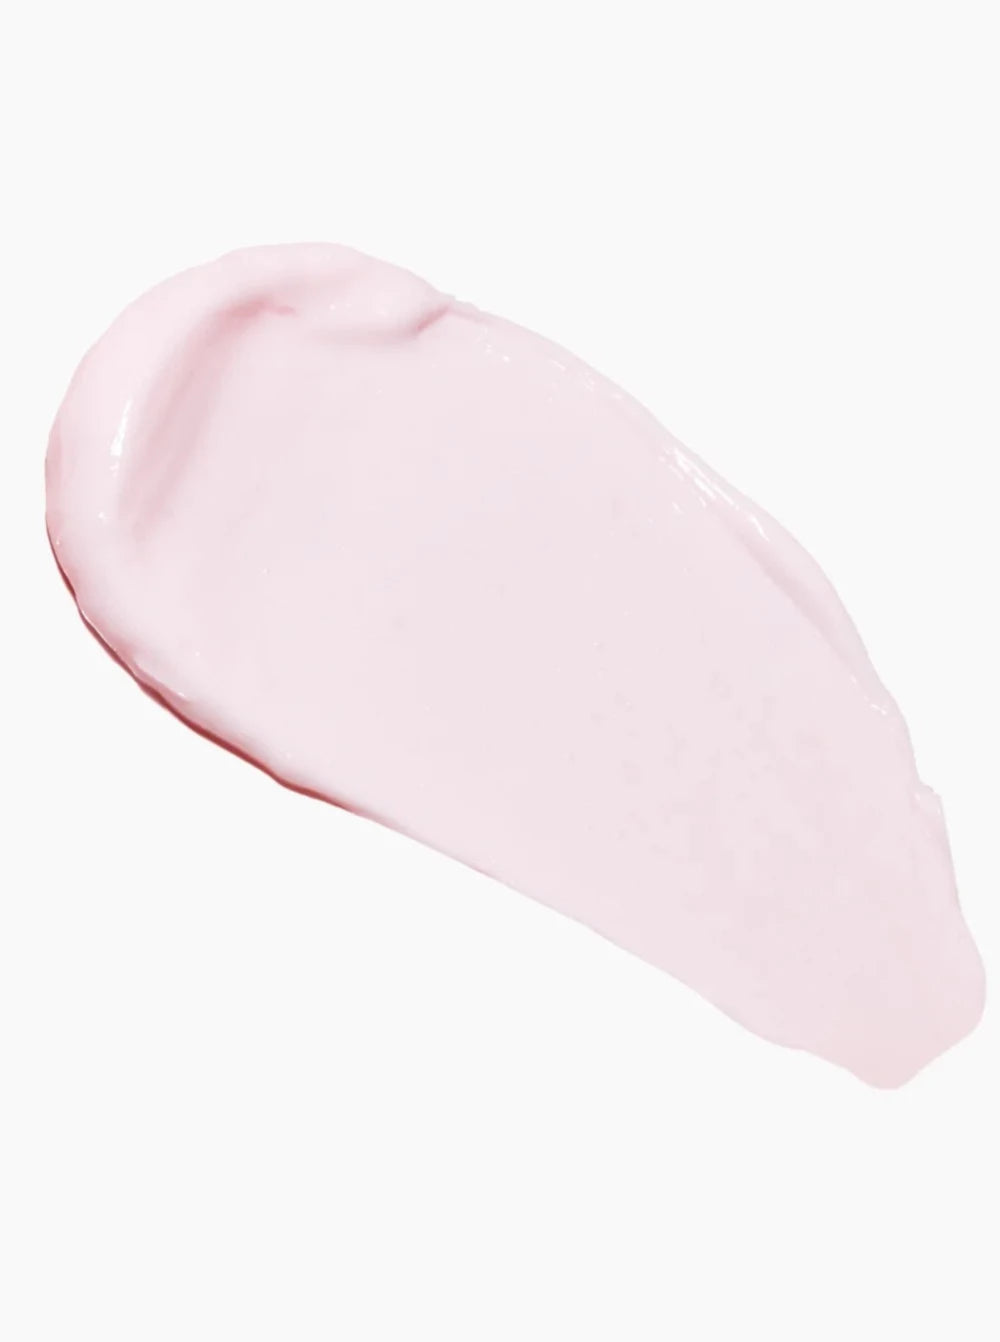 HERBIVORE BOTANICALS Pink Cloud Soft Moisture Cream swatch 